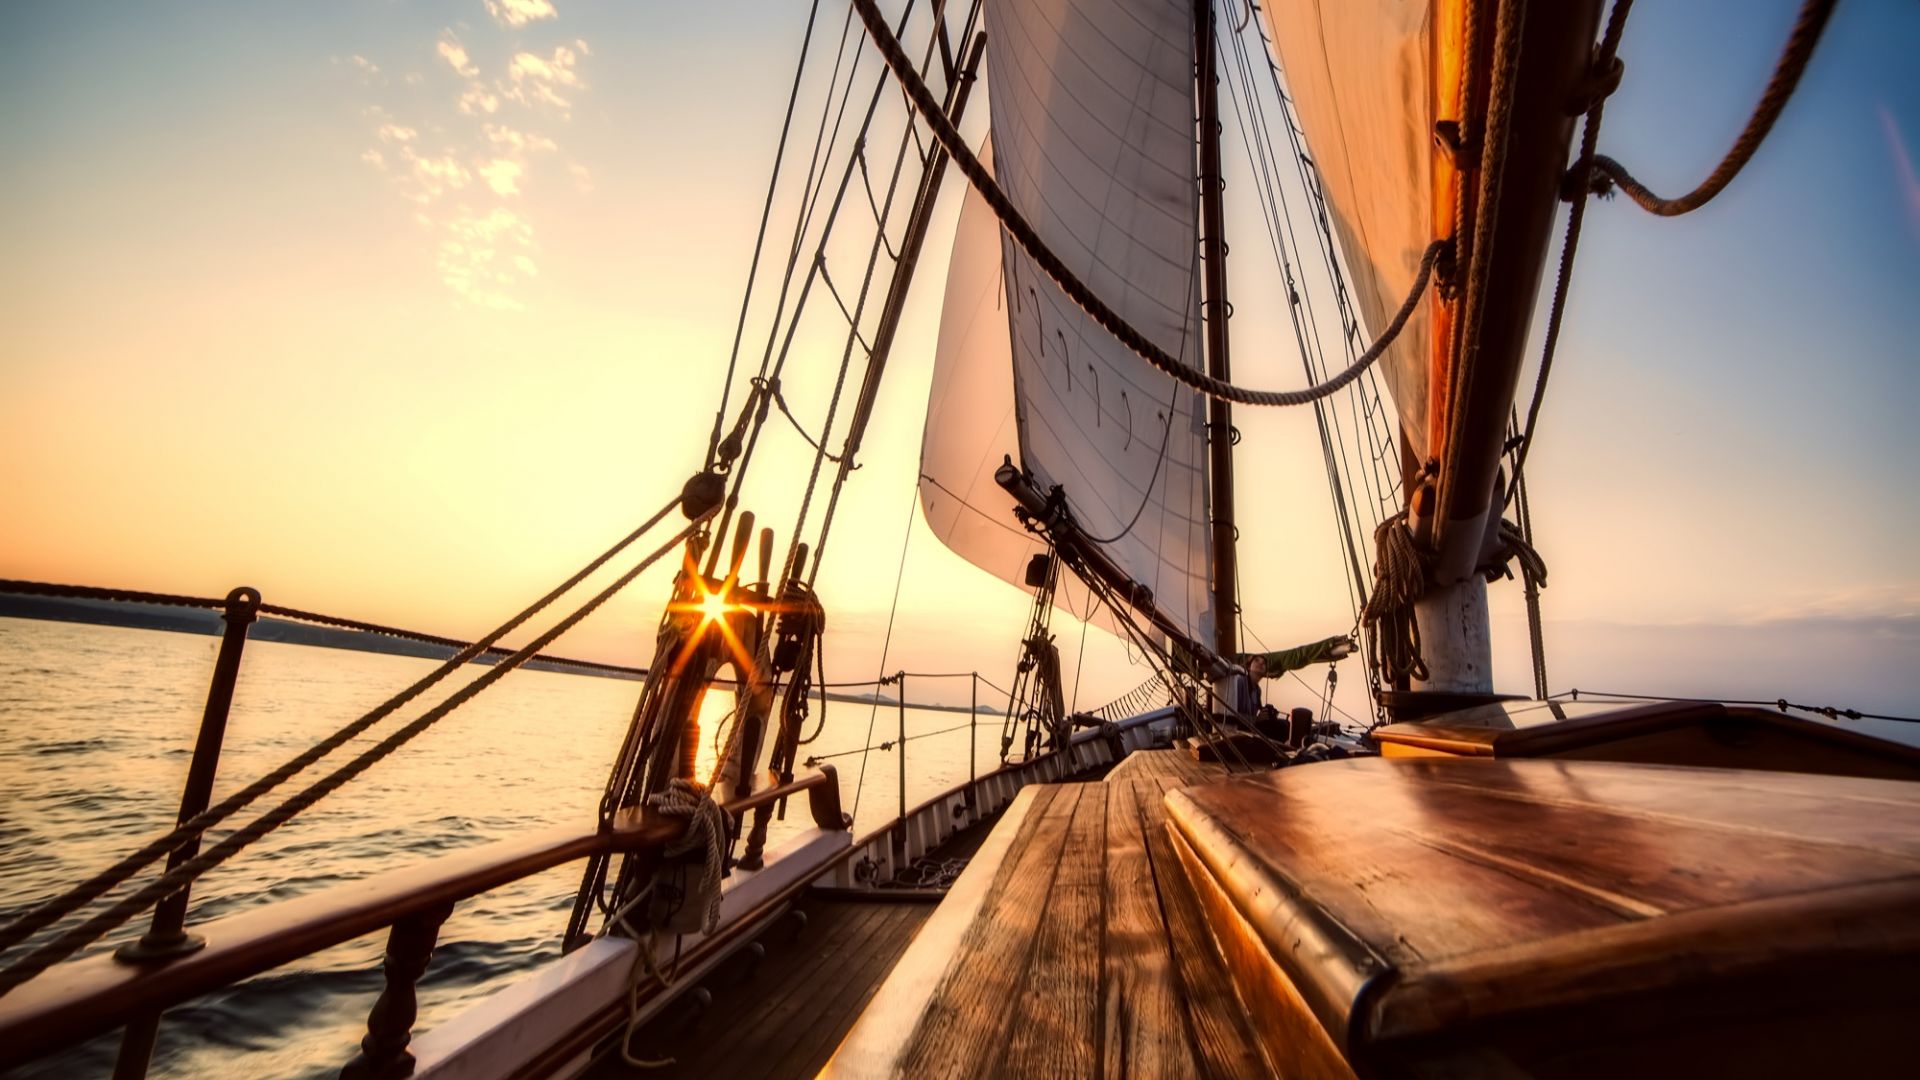 Wallpaper Sailing boat, ship, sunset